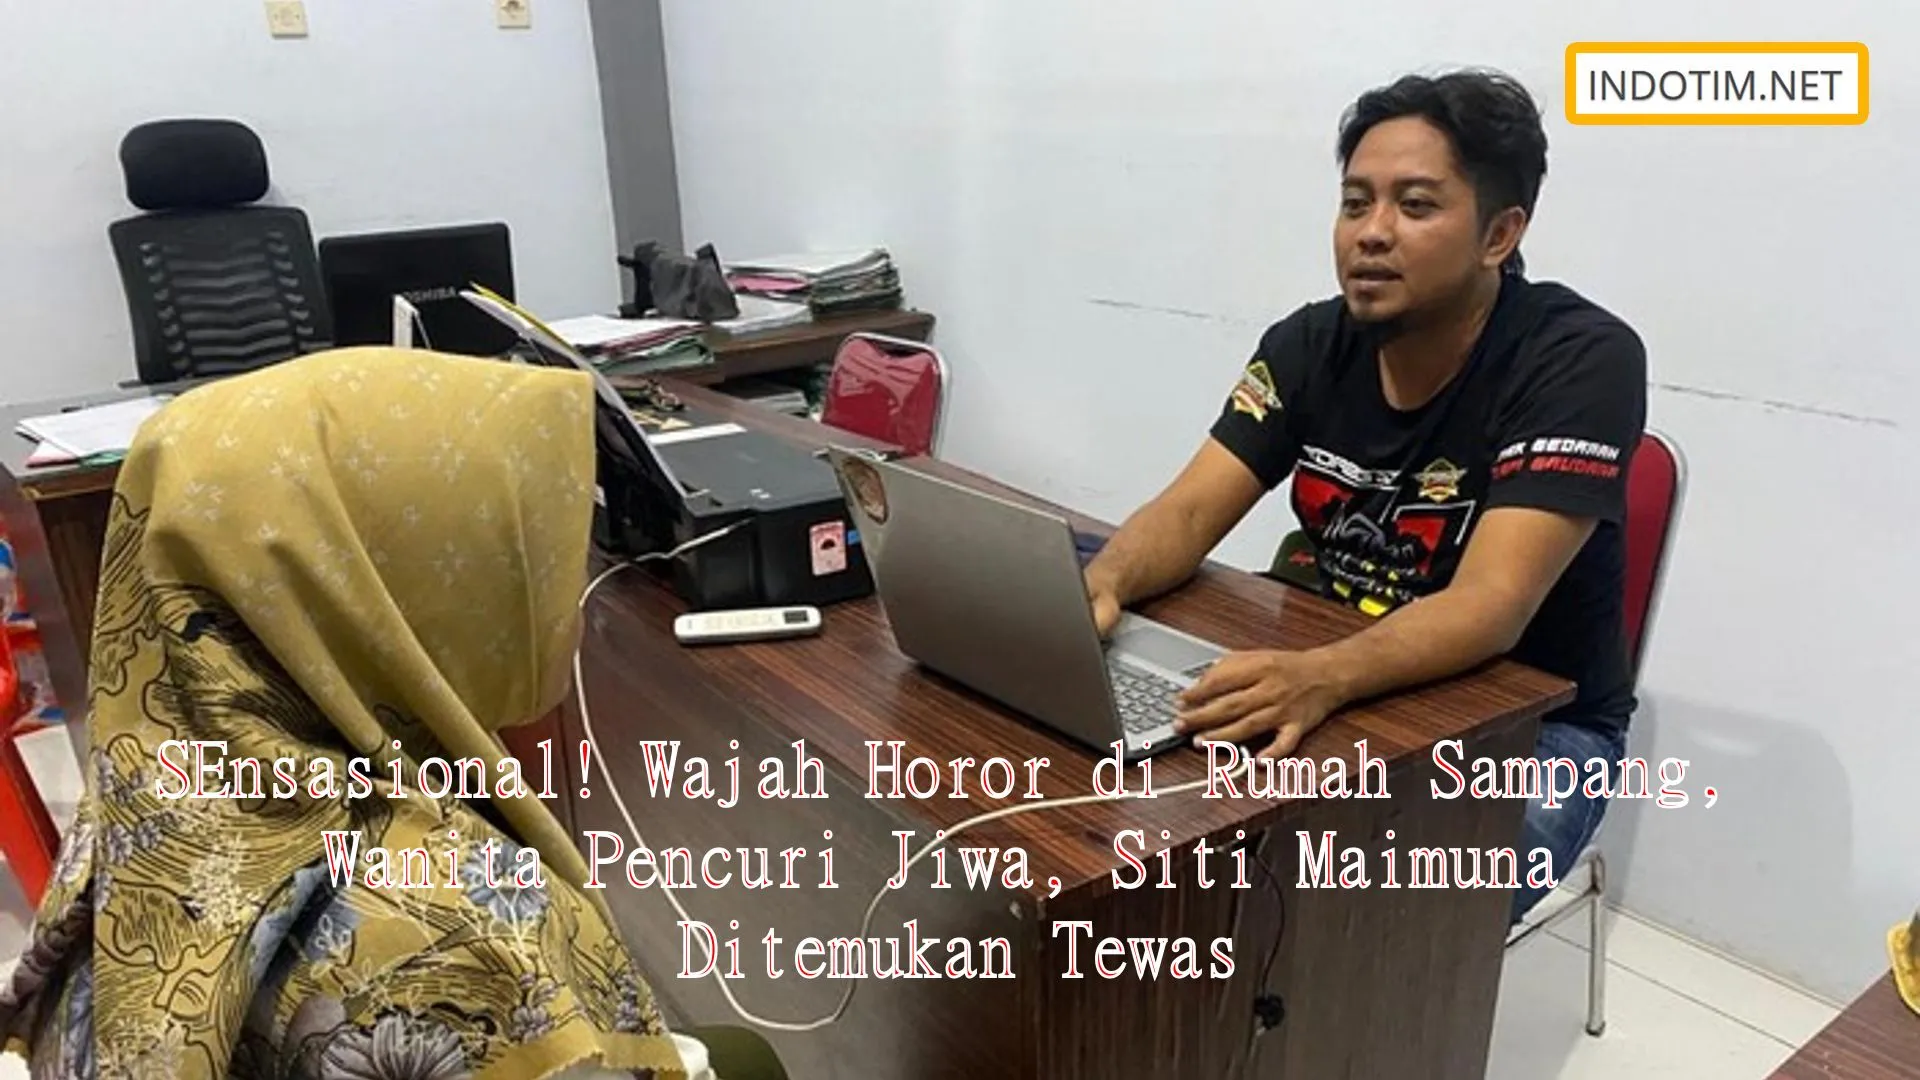 SEnsasional! Wajah Horor di Rumah Sampang, Wanita Pencuri Jiwa, Siti Maimuna Ditemukan Tewas